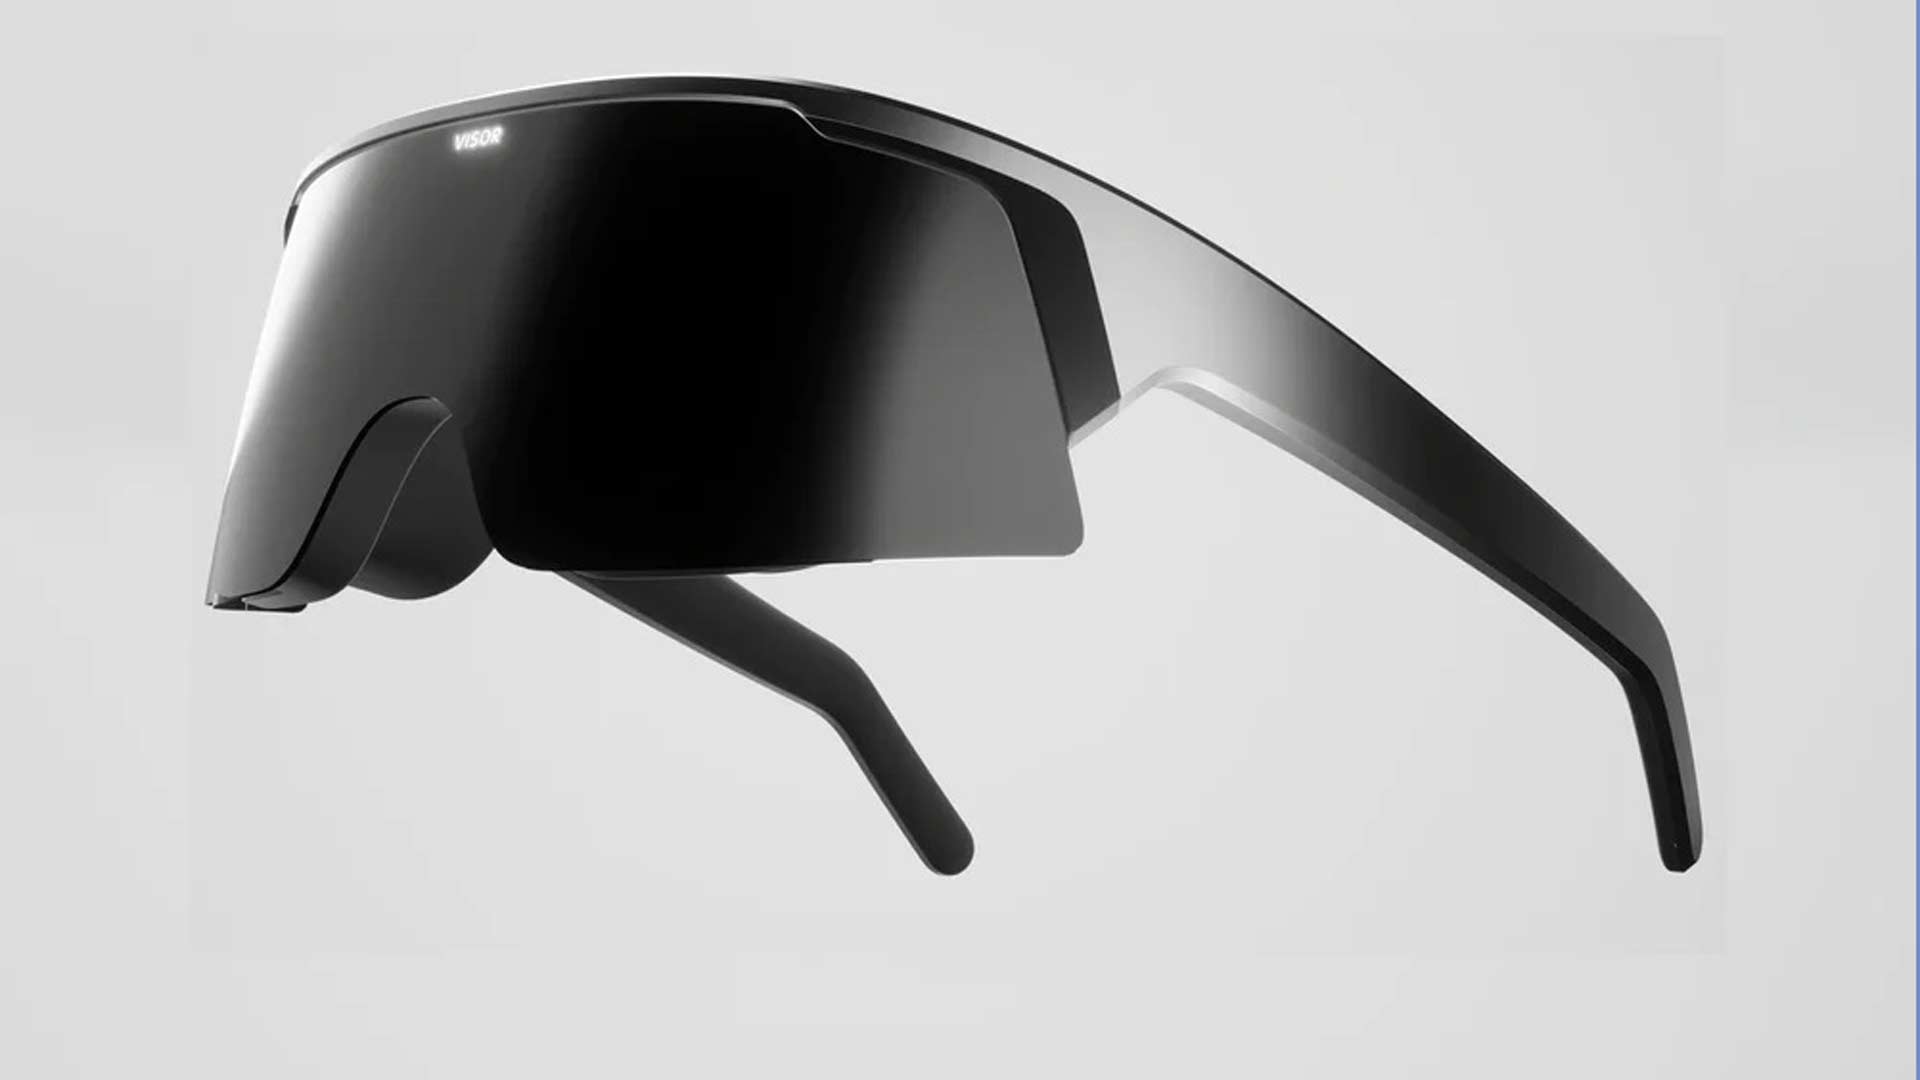 Immersed Opens Pre-orders for Slim & Light ‘Visor’ VR Headset, Starting at $500 – Road to VR